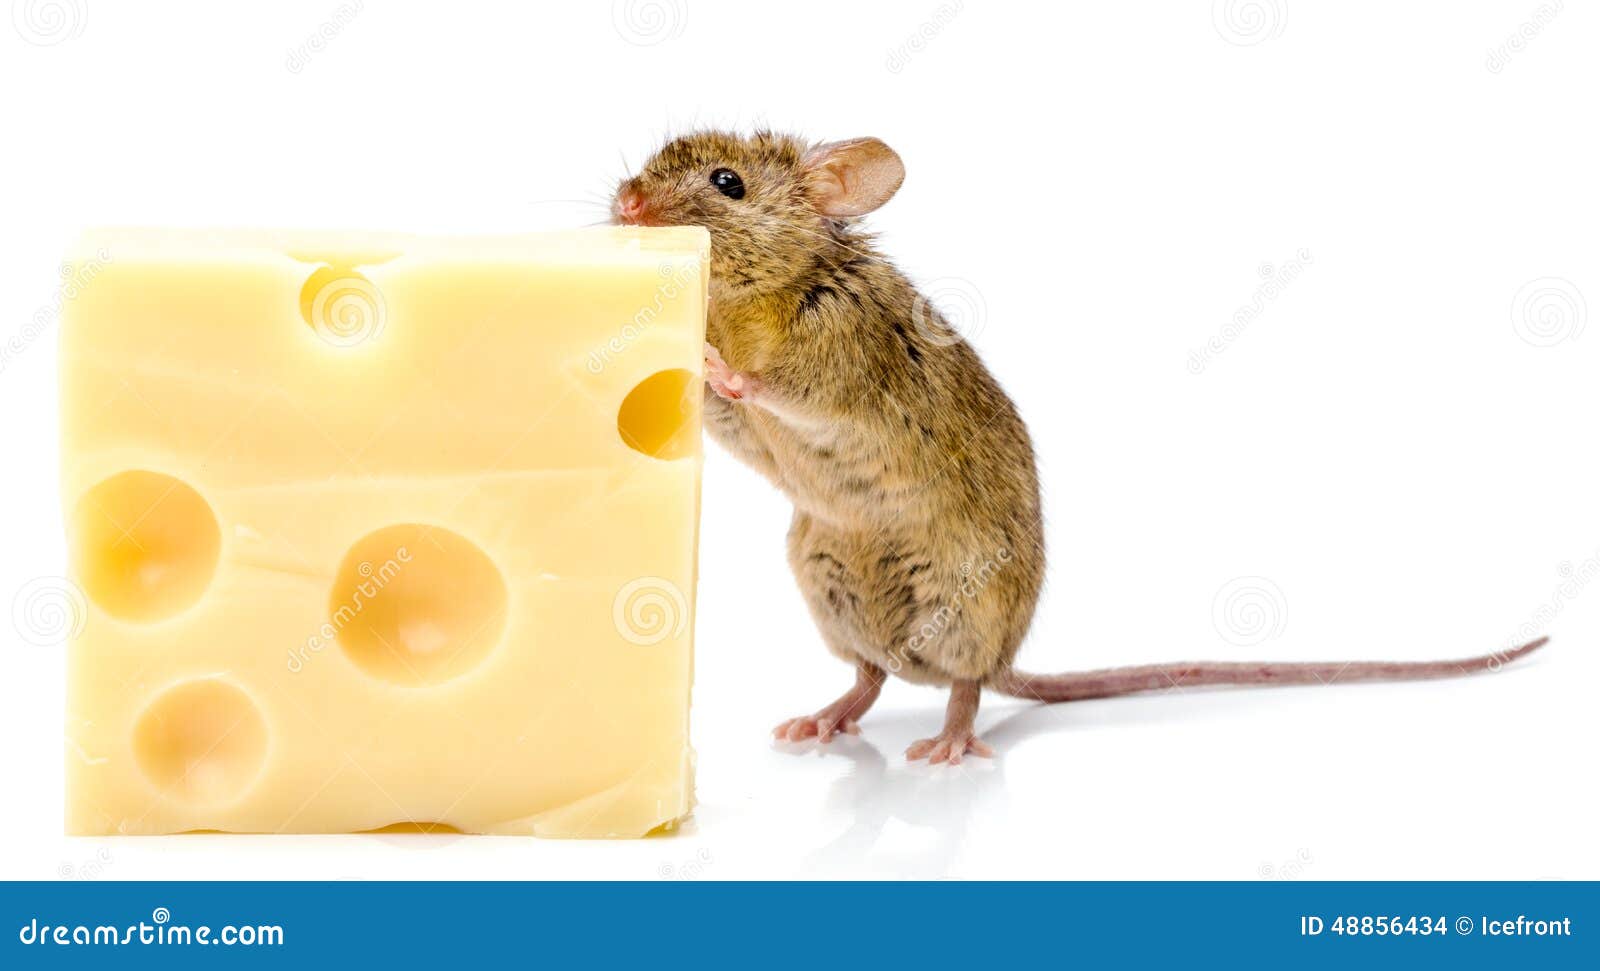 Про мышей и сыр. Мышь ест сыр. Домовая мышь ест сыр. Mus musculus домовая мышь. Лабораторная мышь (mus musculus).